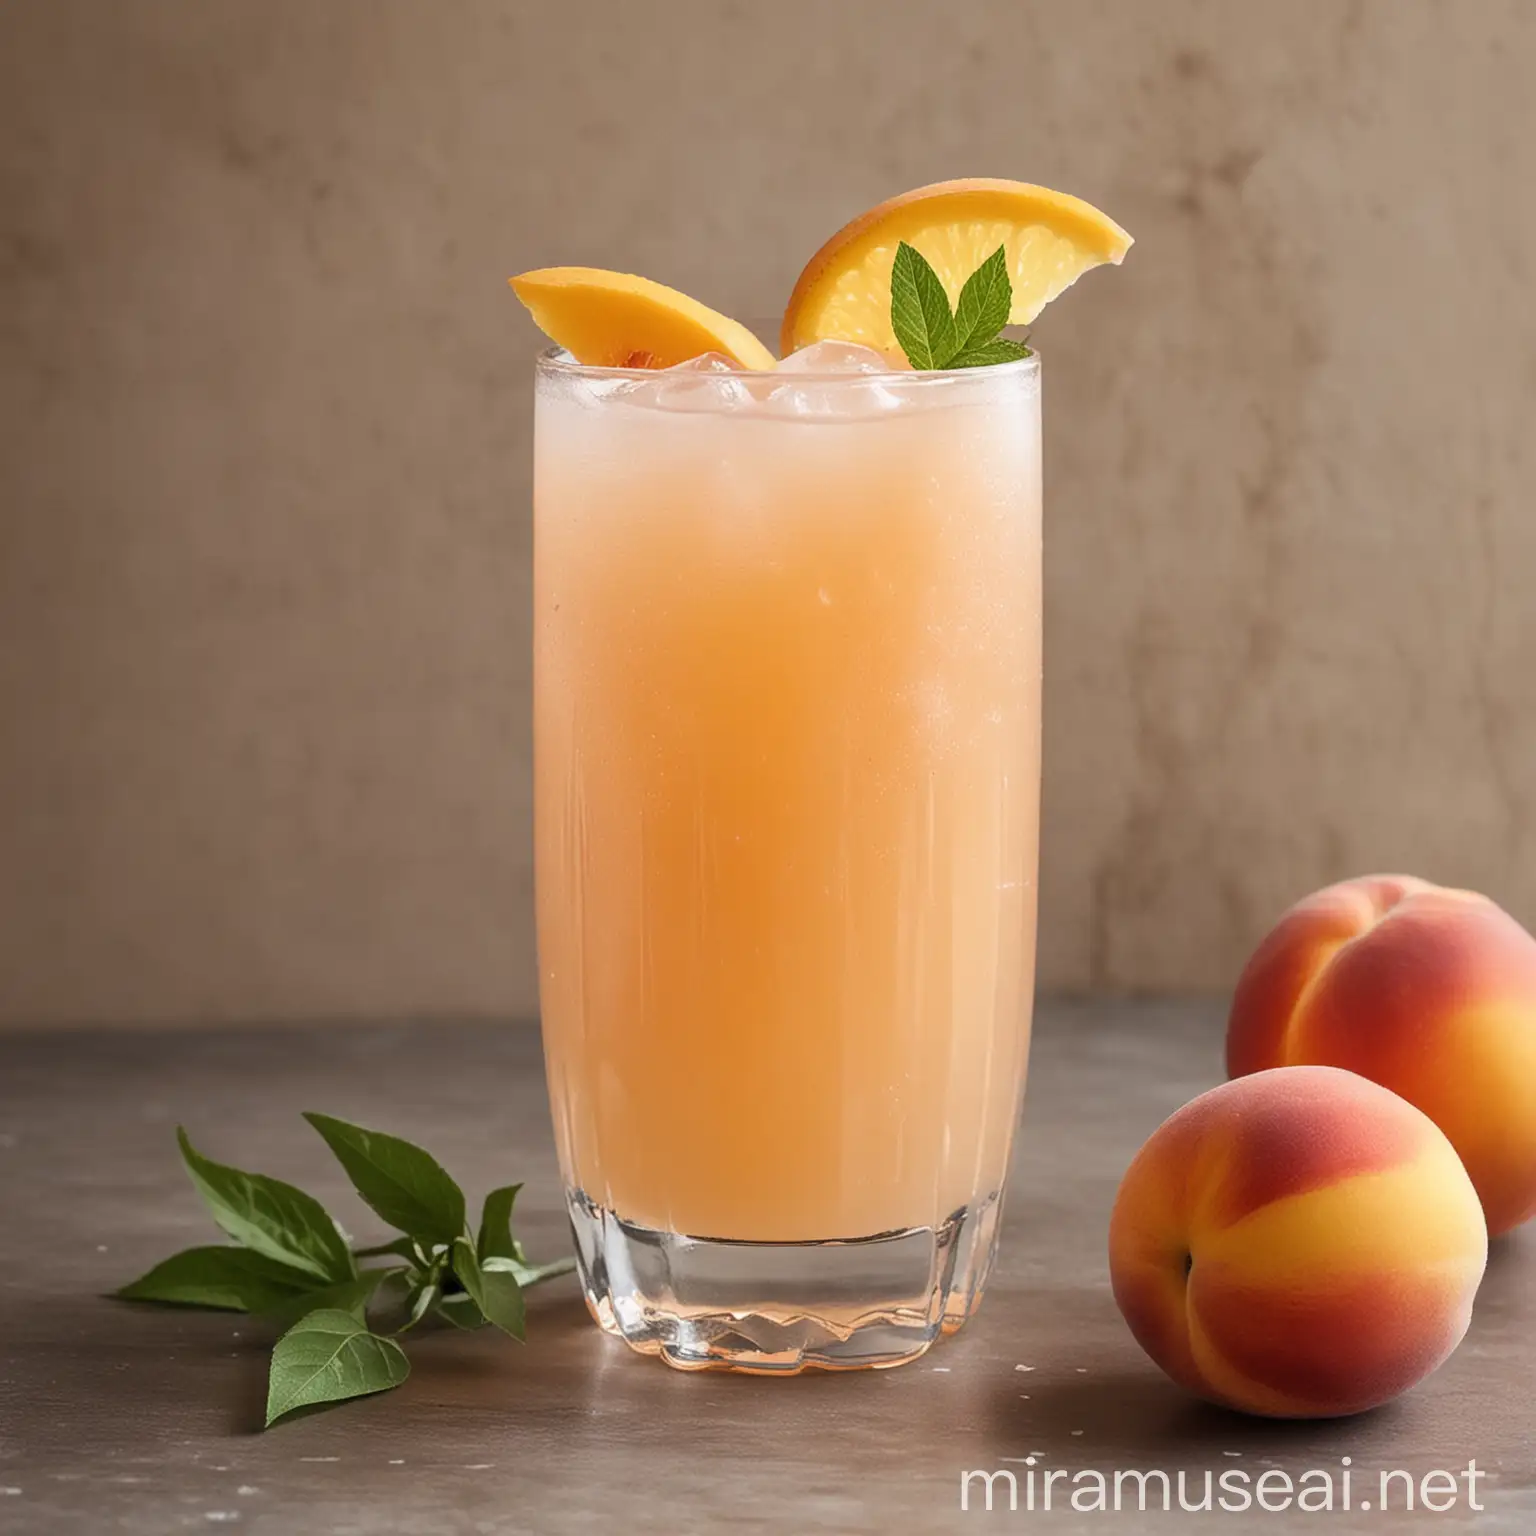 Peach lemonade